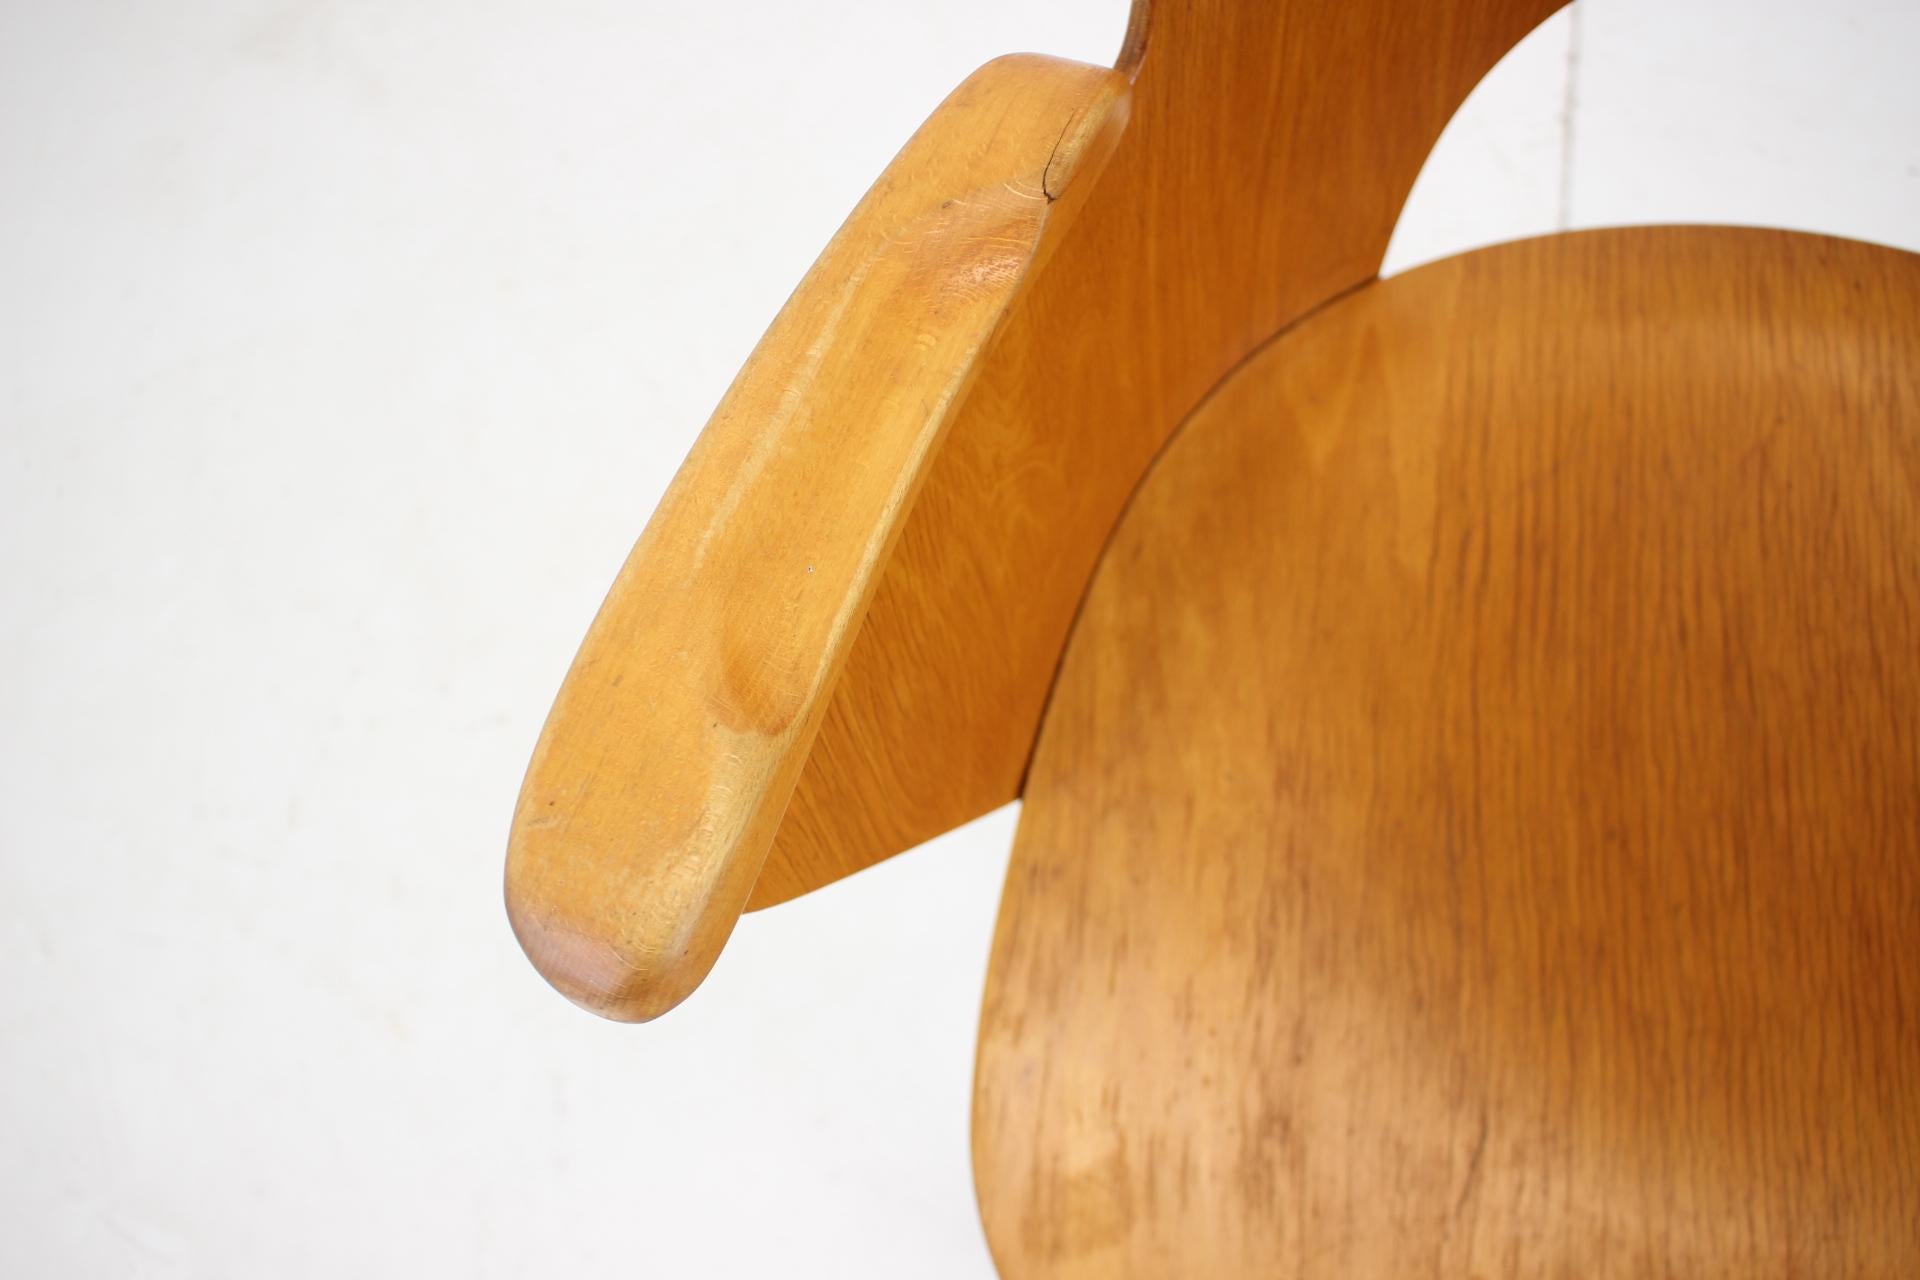 Mid-20th Century Oswald Haerdtl Beech Chair, Czechoslovakia, 1959 For Sale